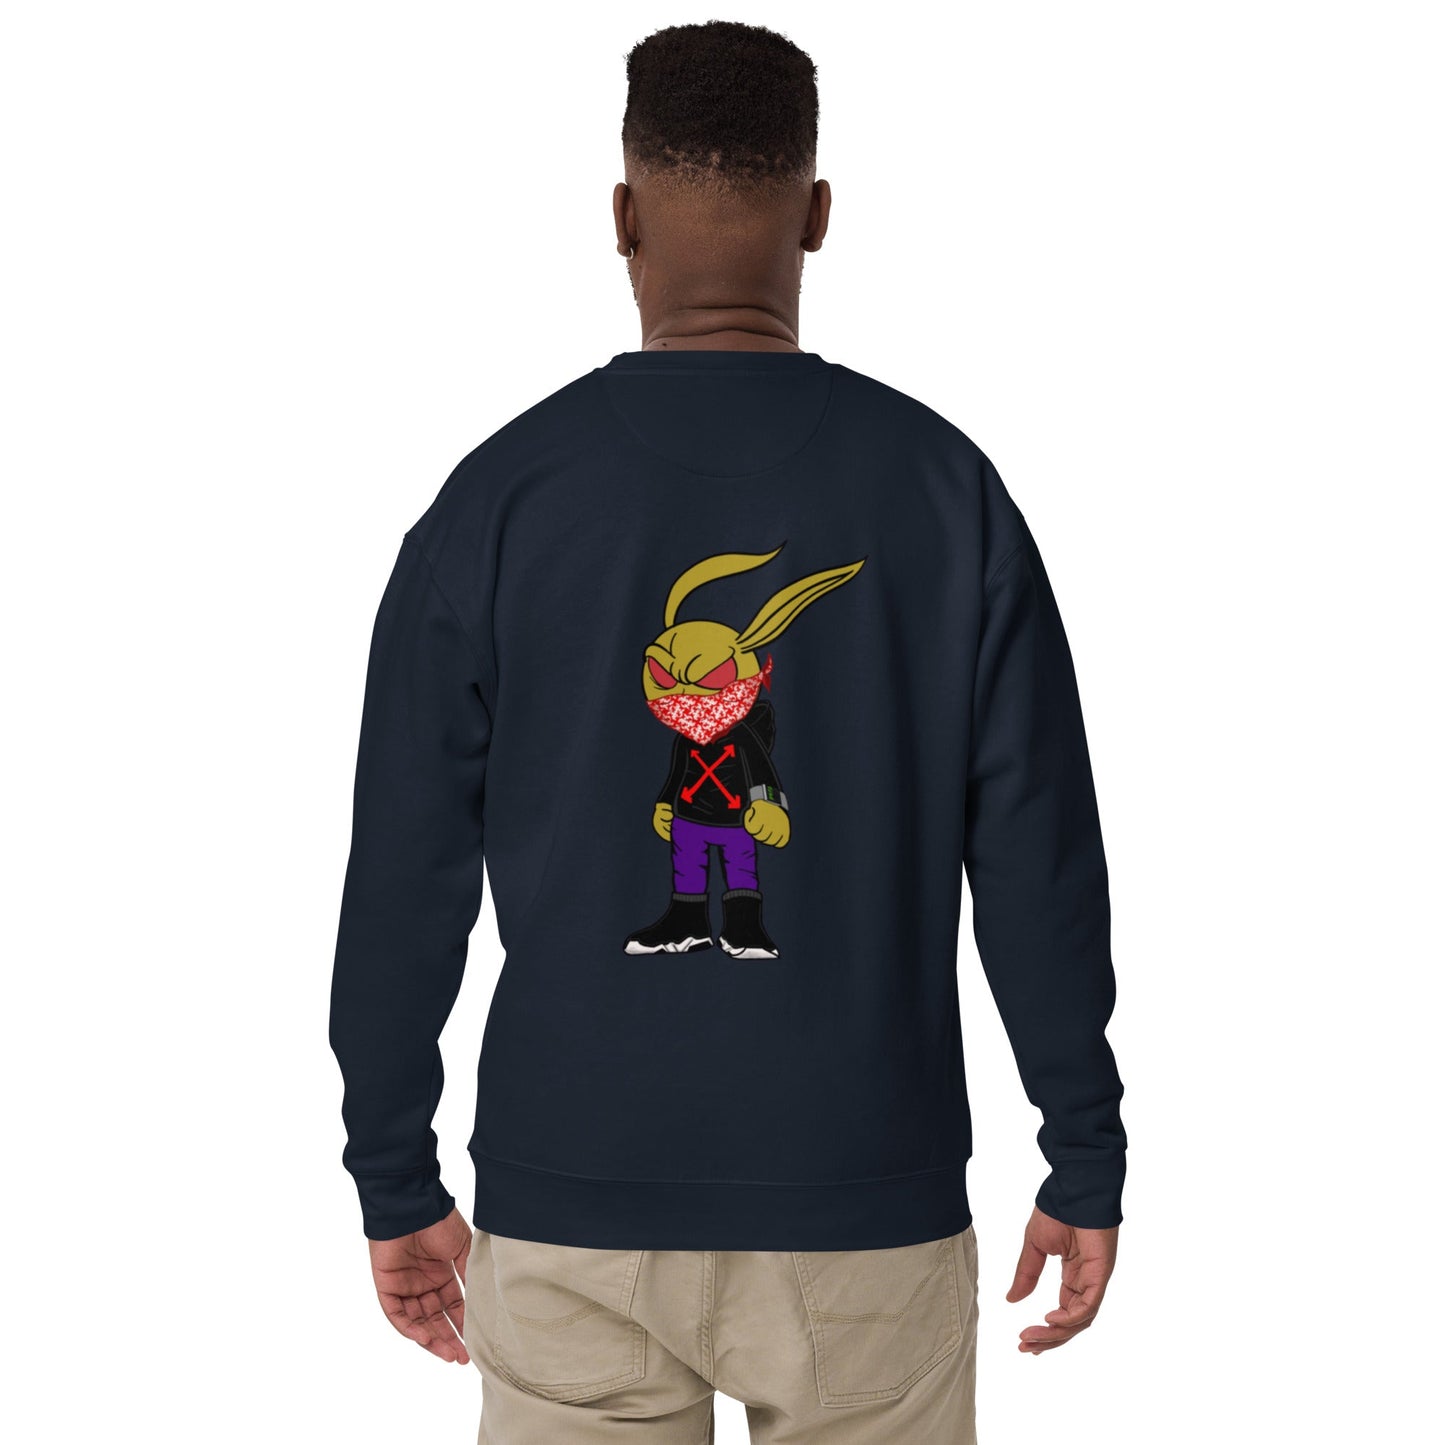 ROGER Style 3 Sweatshirt